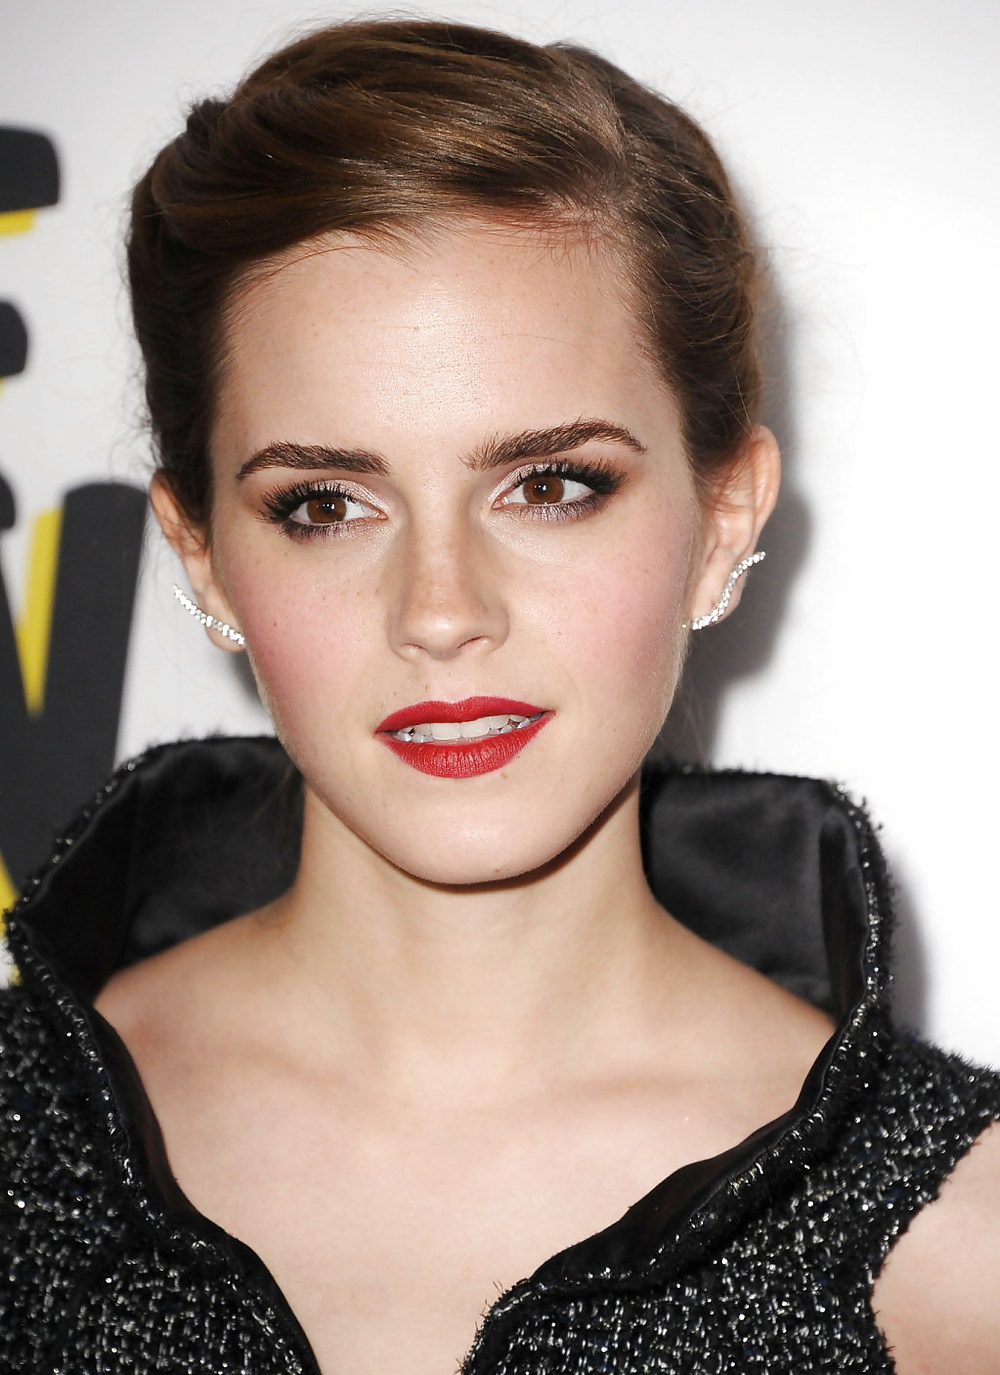 Plus Beau Pic Emma Watson Et Le Visage Jamais! #17724399